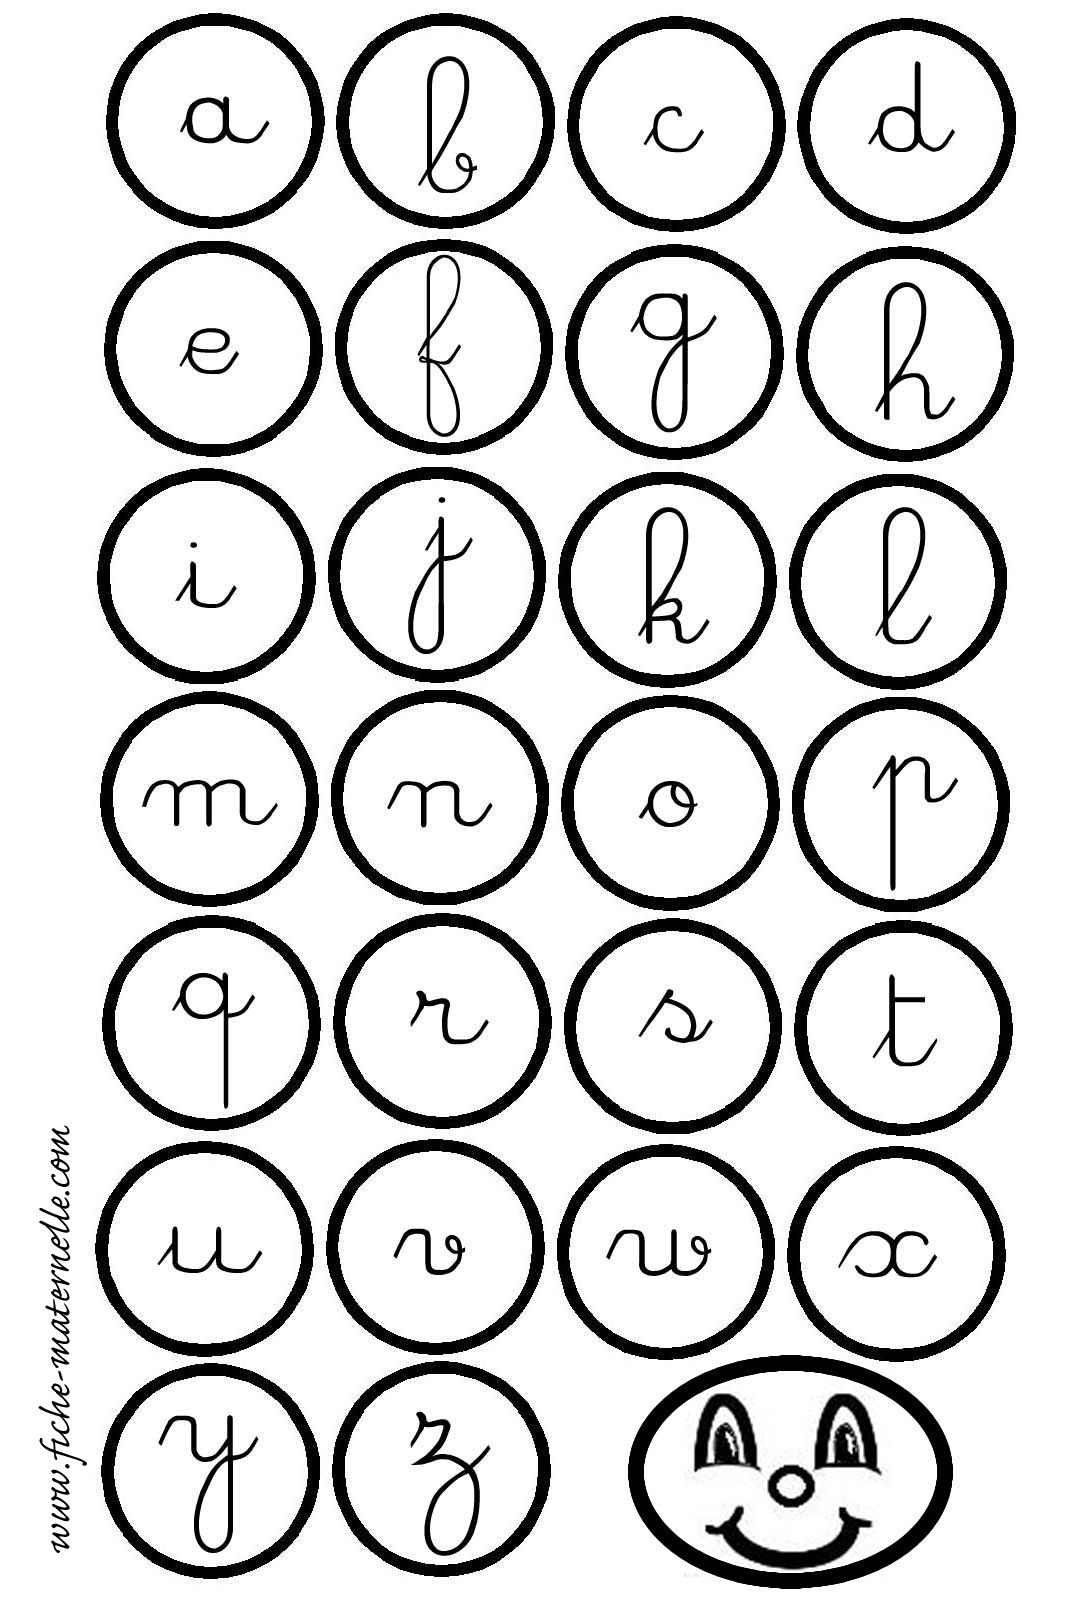 Maternelle : Lecture Et Écriture Des Lettres De L'alphabet tout Apprendre L Alphabet En Francais Maternelle